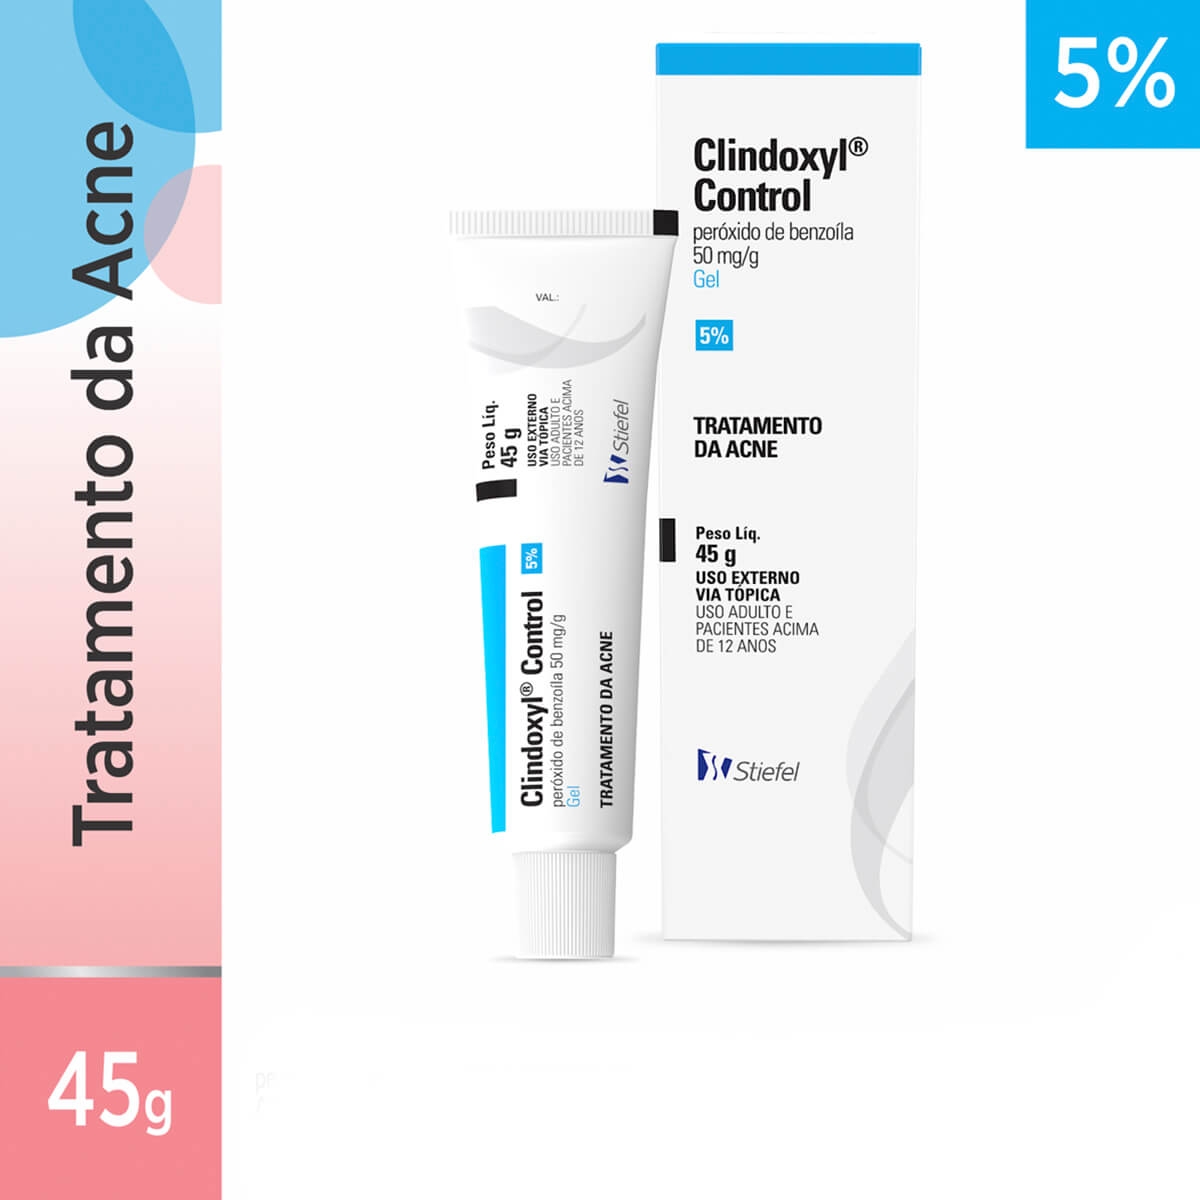 Gel Clindoxyl Control 5% para Acne com 45g